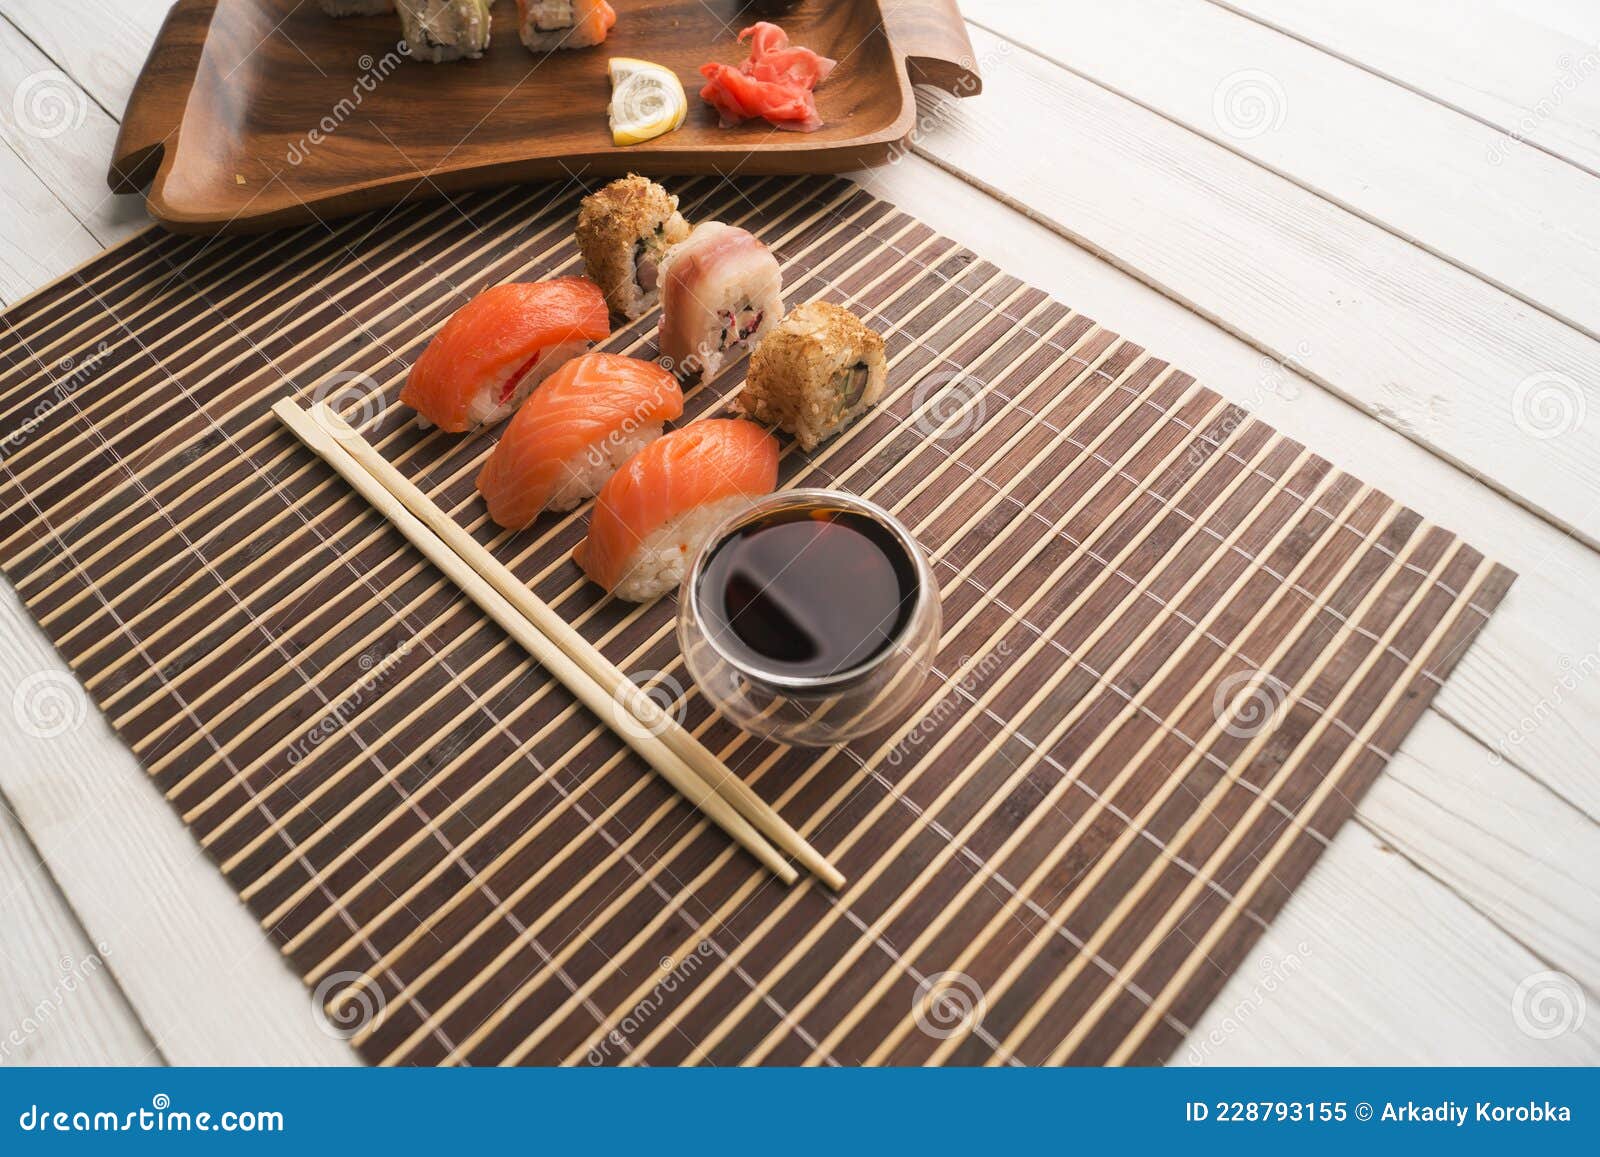 用筷子将寿司卷卷在厚木板寿司卷上. 日本食品 库存图片. 图片 包括有 食物, 深深, 原始, 筷子, 板岩 - 228793151